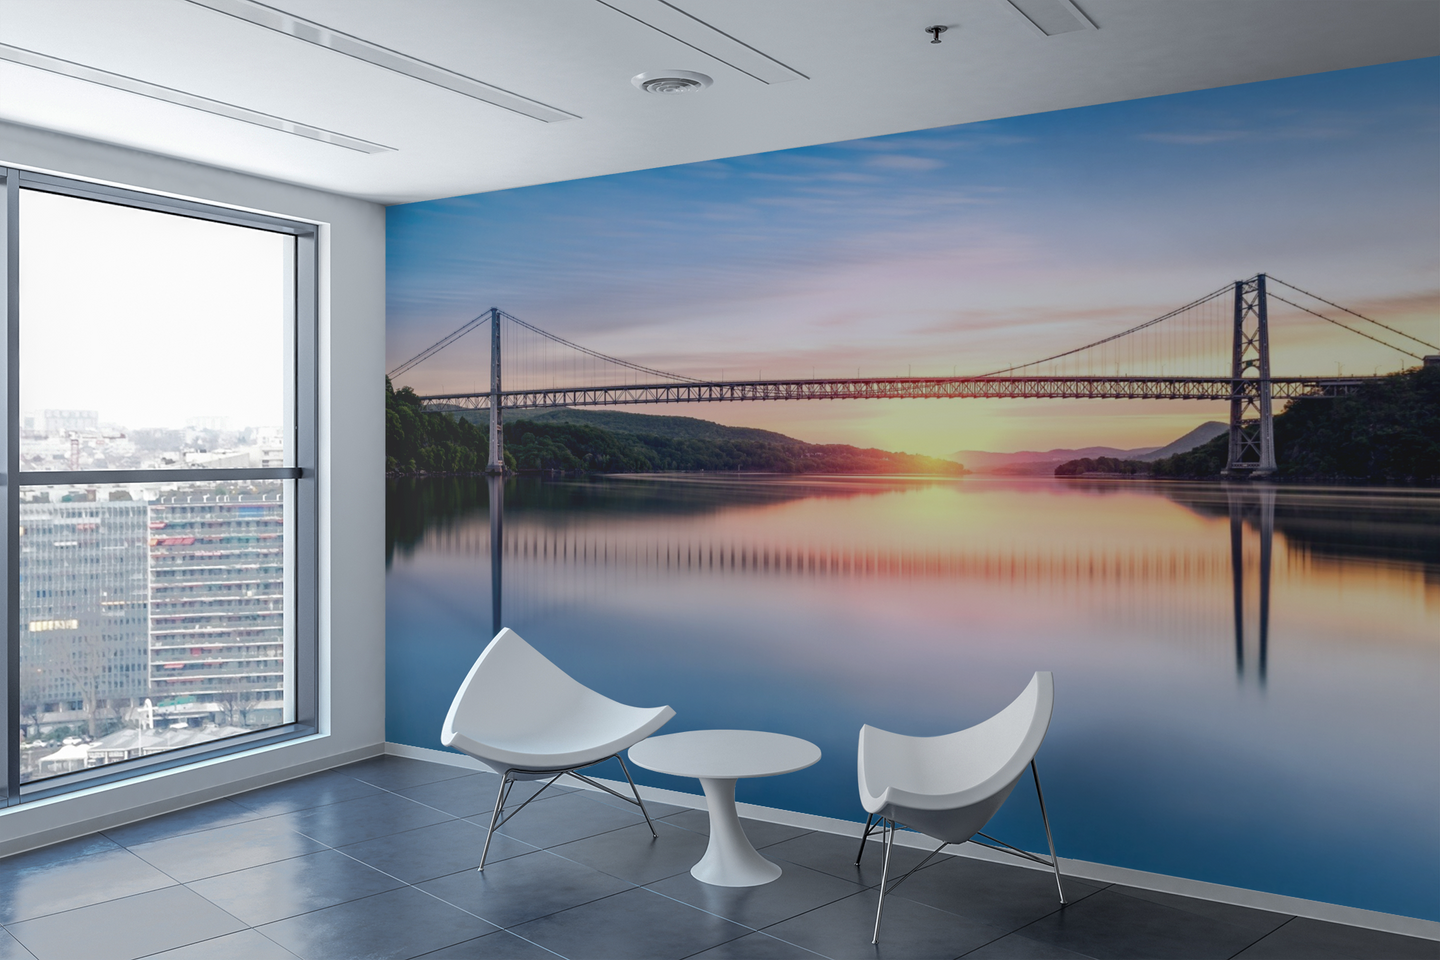 Bridge Sunset Panoramic - 0178 - Wall Murals Printing - wall art